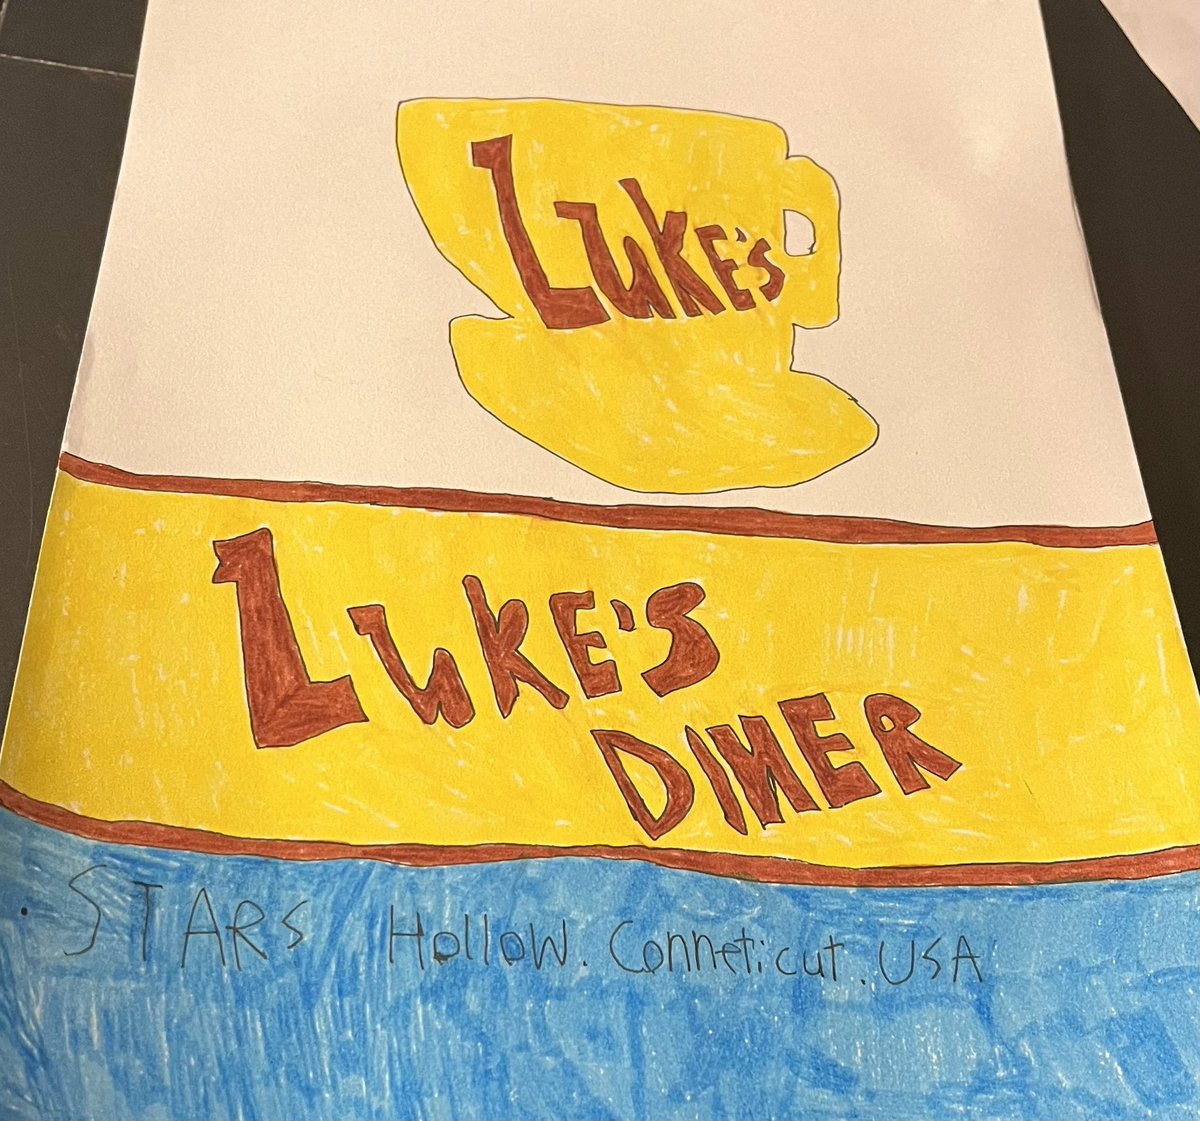 Luke’s Diner logo #lukesdiner #GilmoreGirls #tvart #WarnerBros #2023art #handdrawnart #sundevilsmilysart #warnerbrosart #juneart